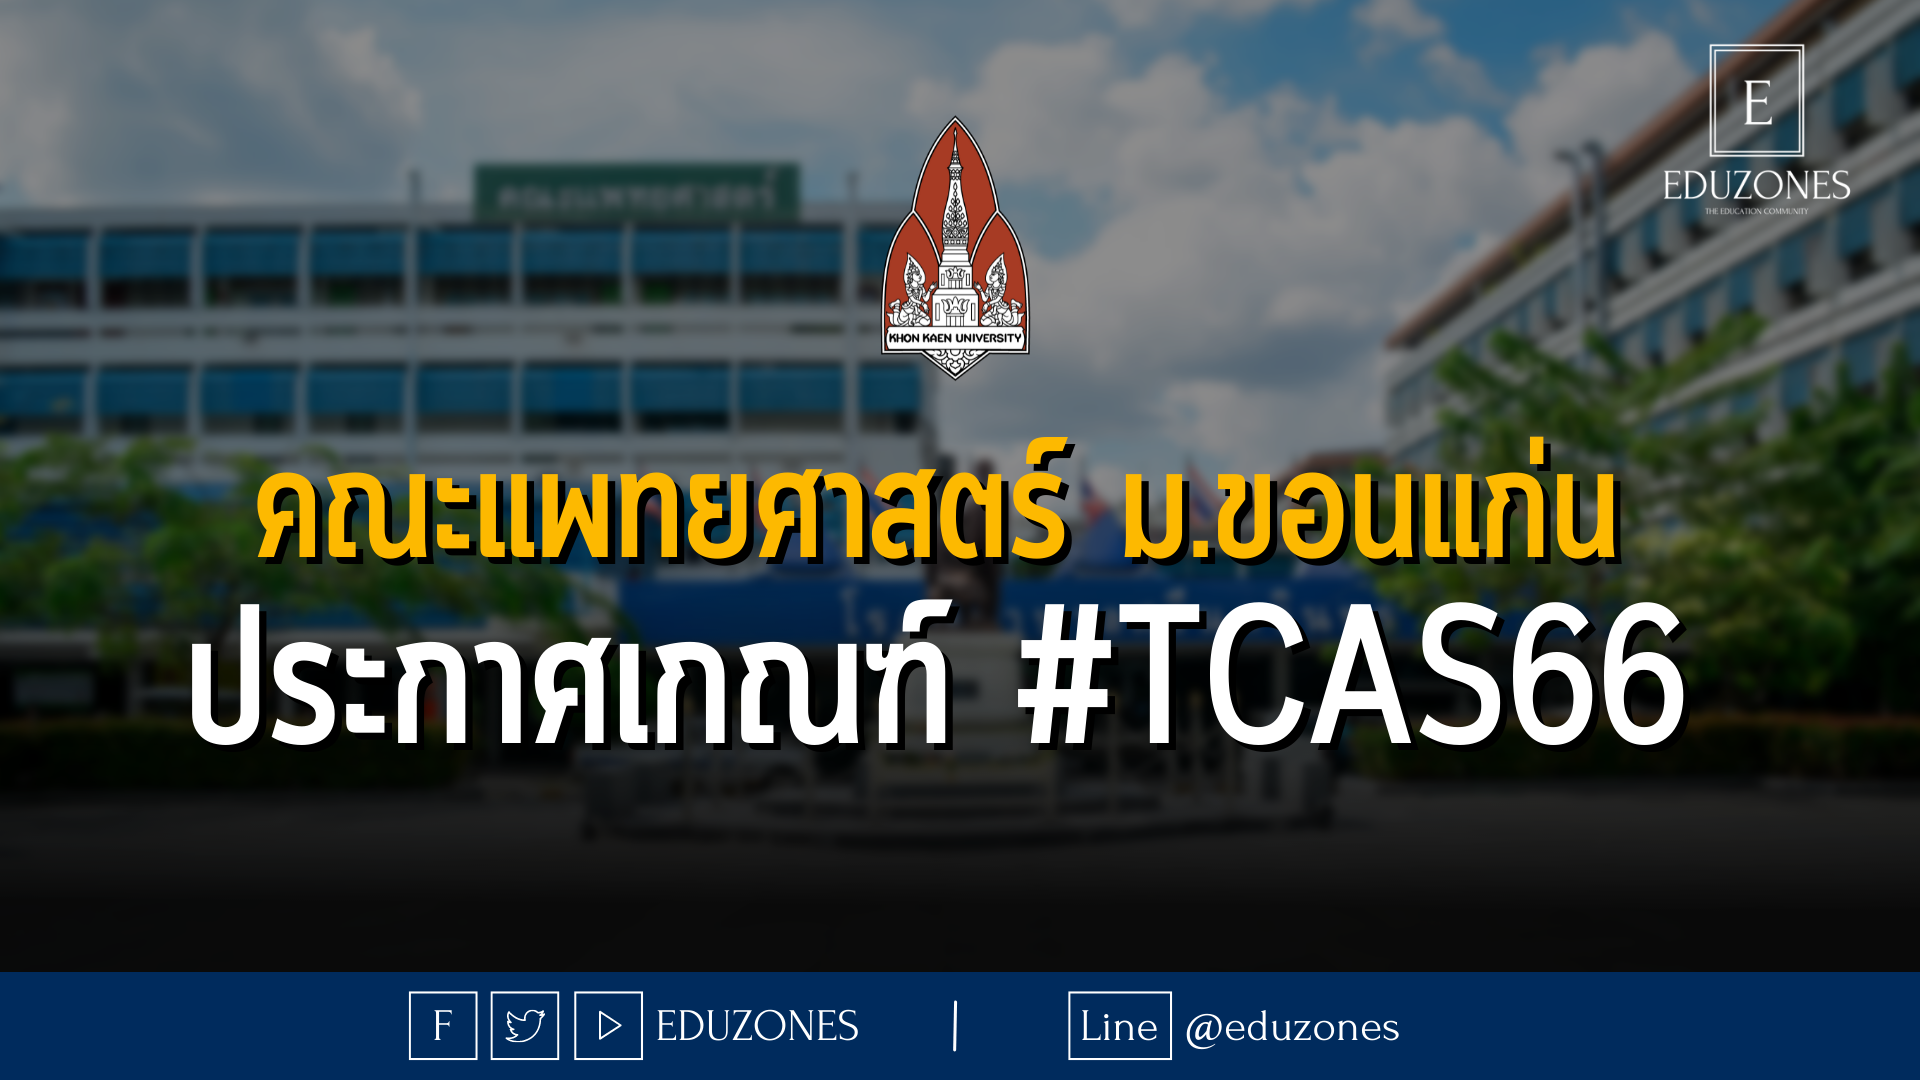 คณะแพทยศาสตร์ ม.ขอนแก่น ประกาศเกณฑ์ #TCAS66